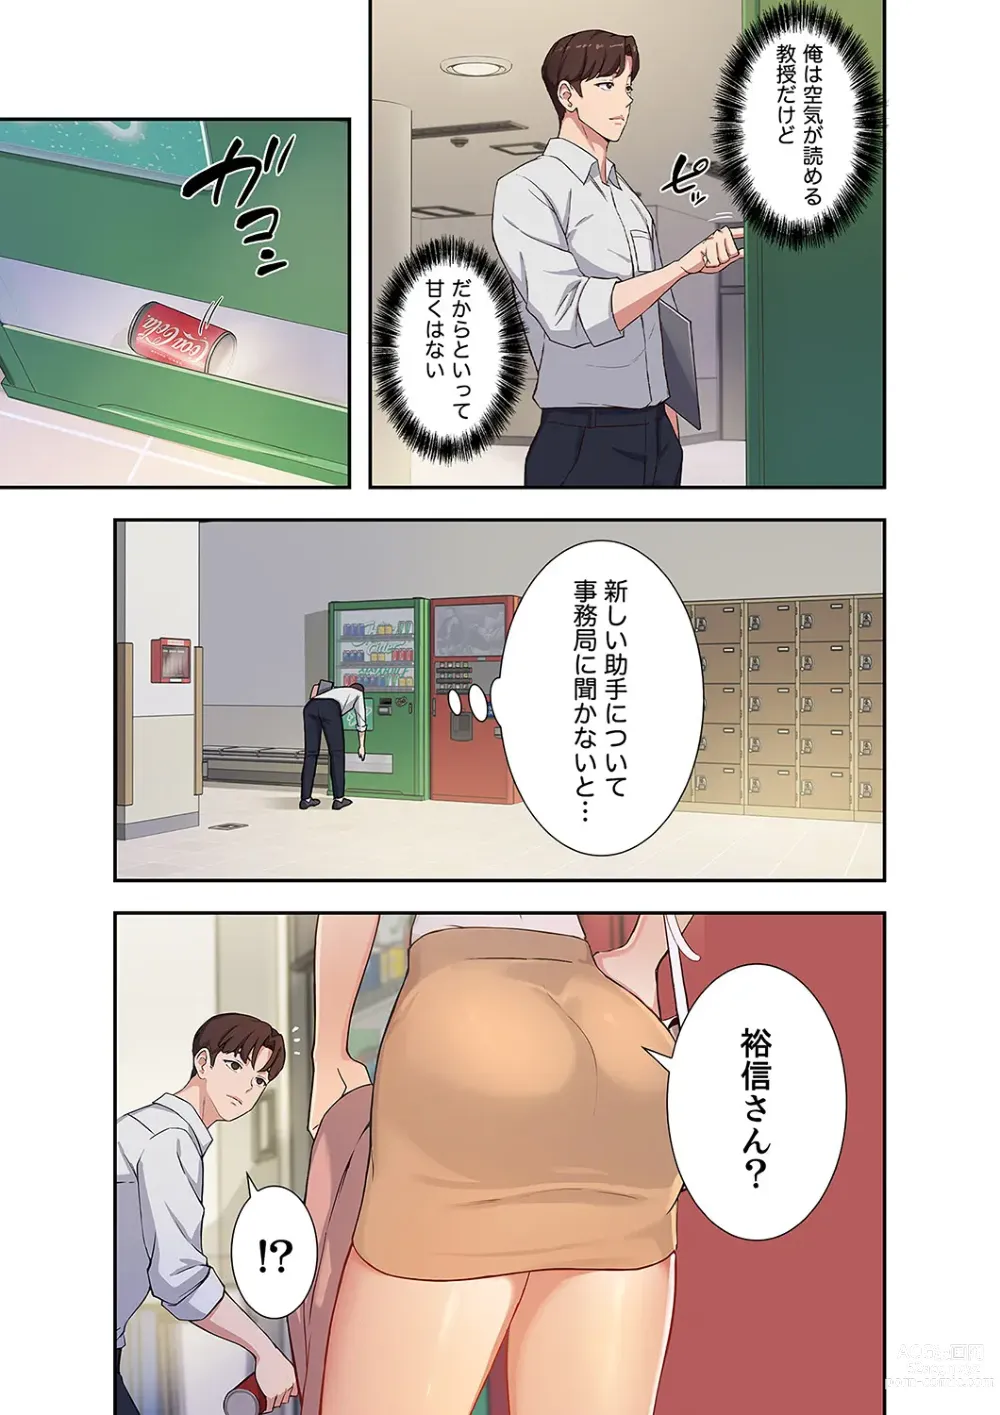 Page 23 of manga Hatachi 01